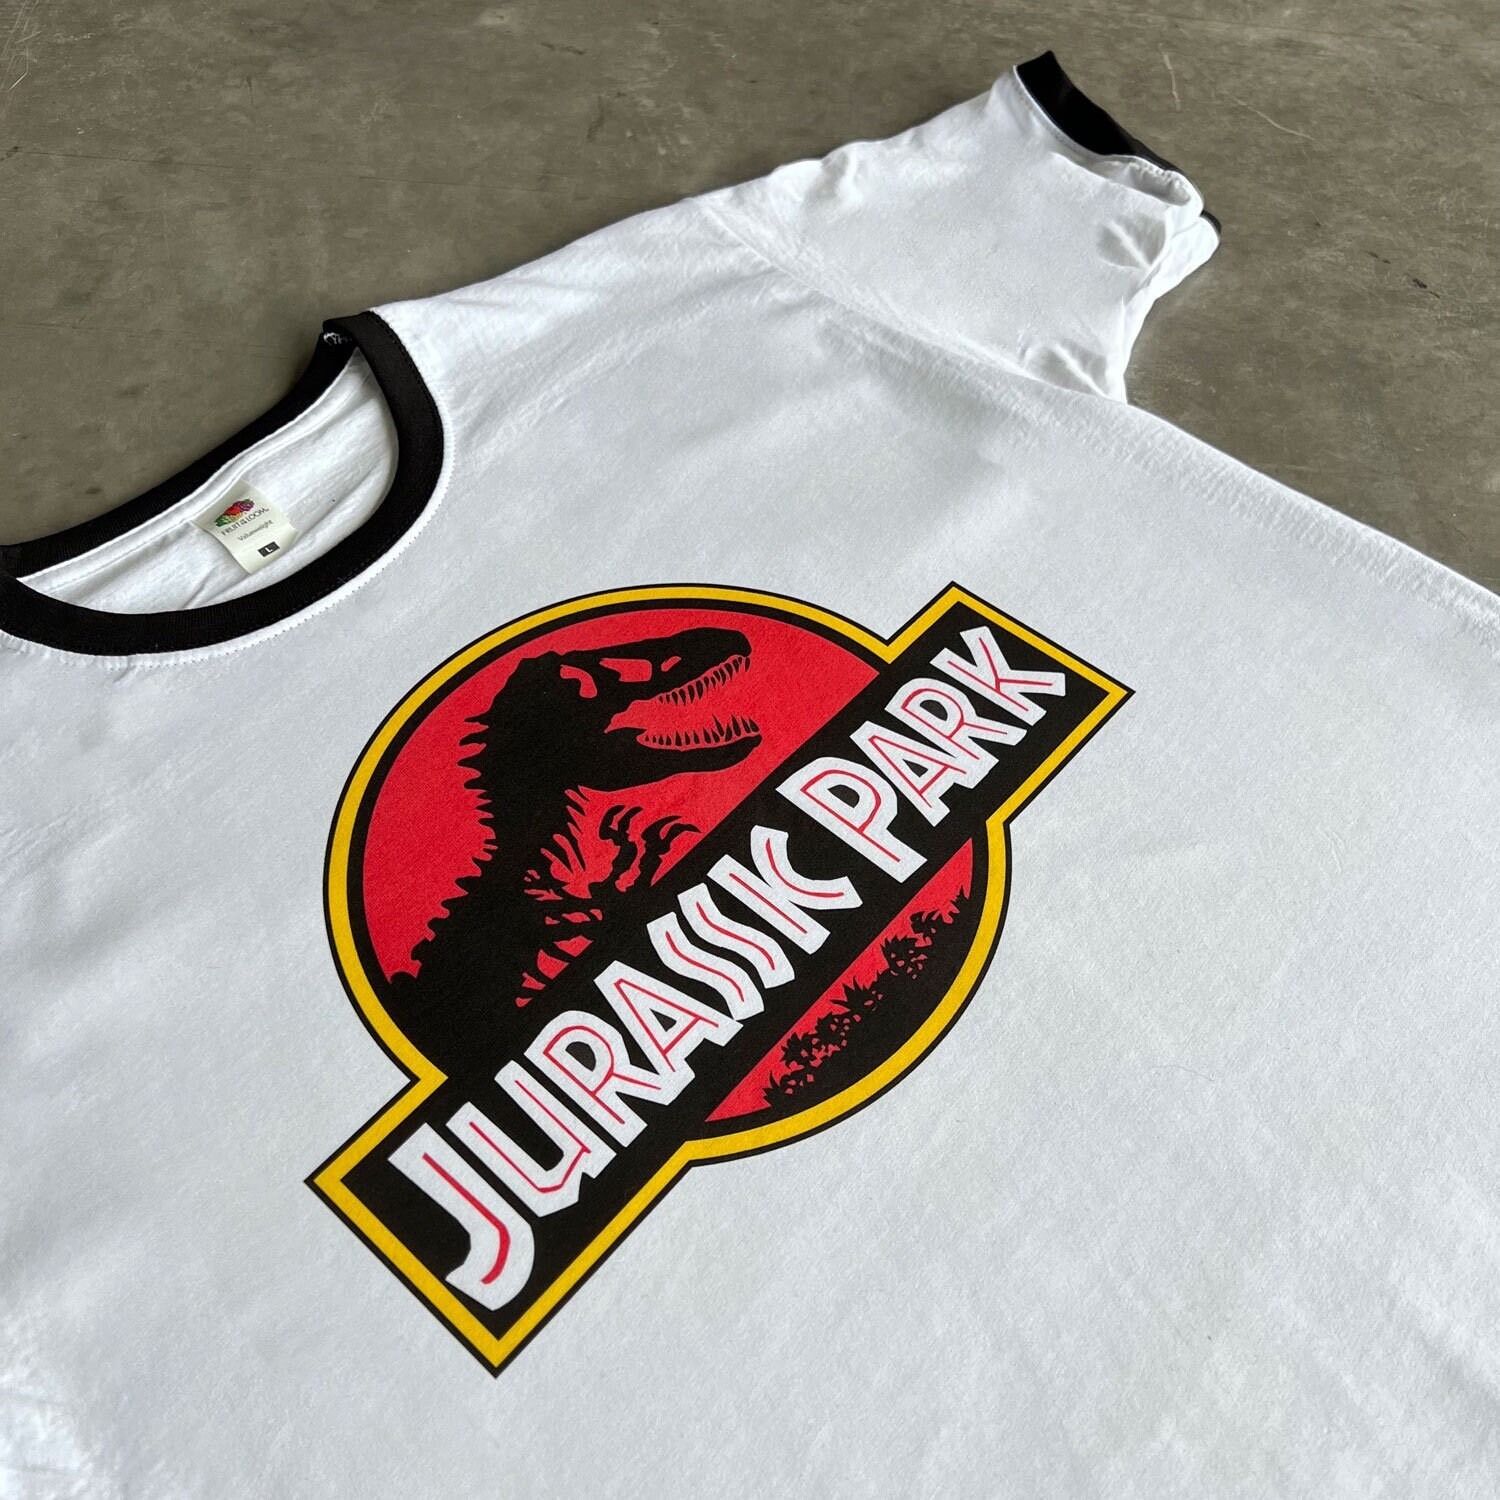 Aliens - Planet Lv-426 - Jurassic Park Men T Shirt